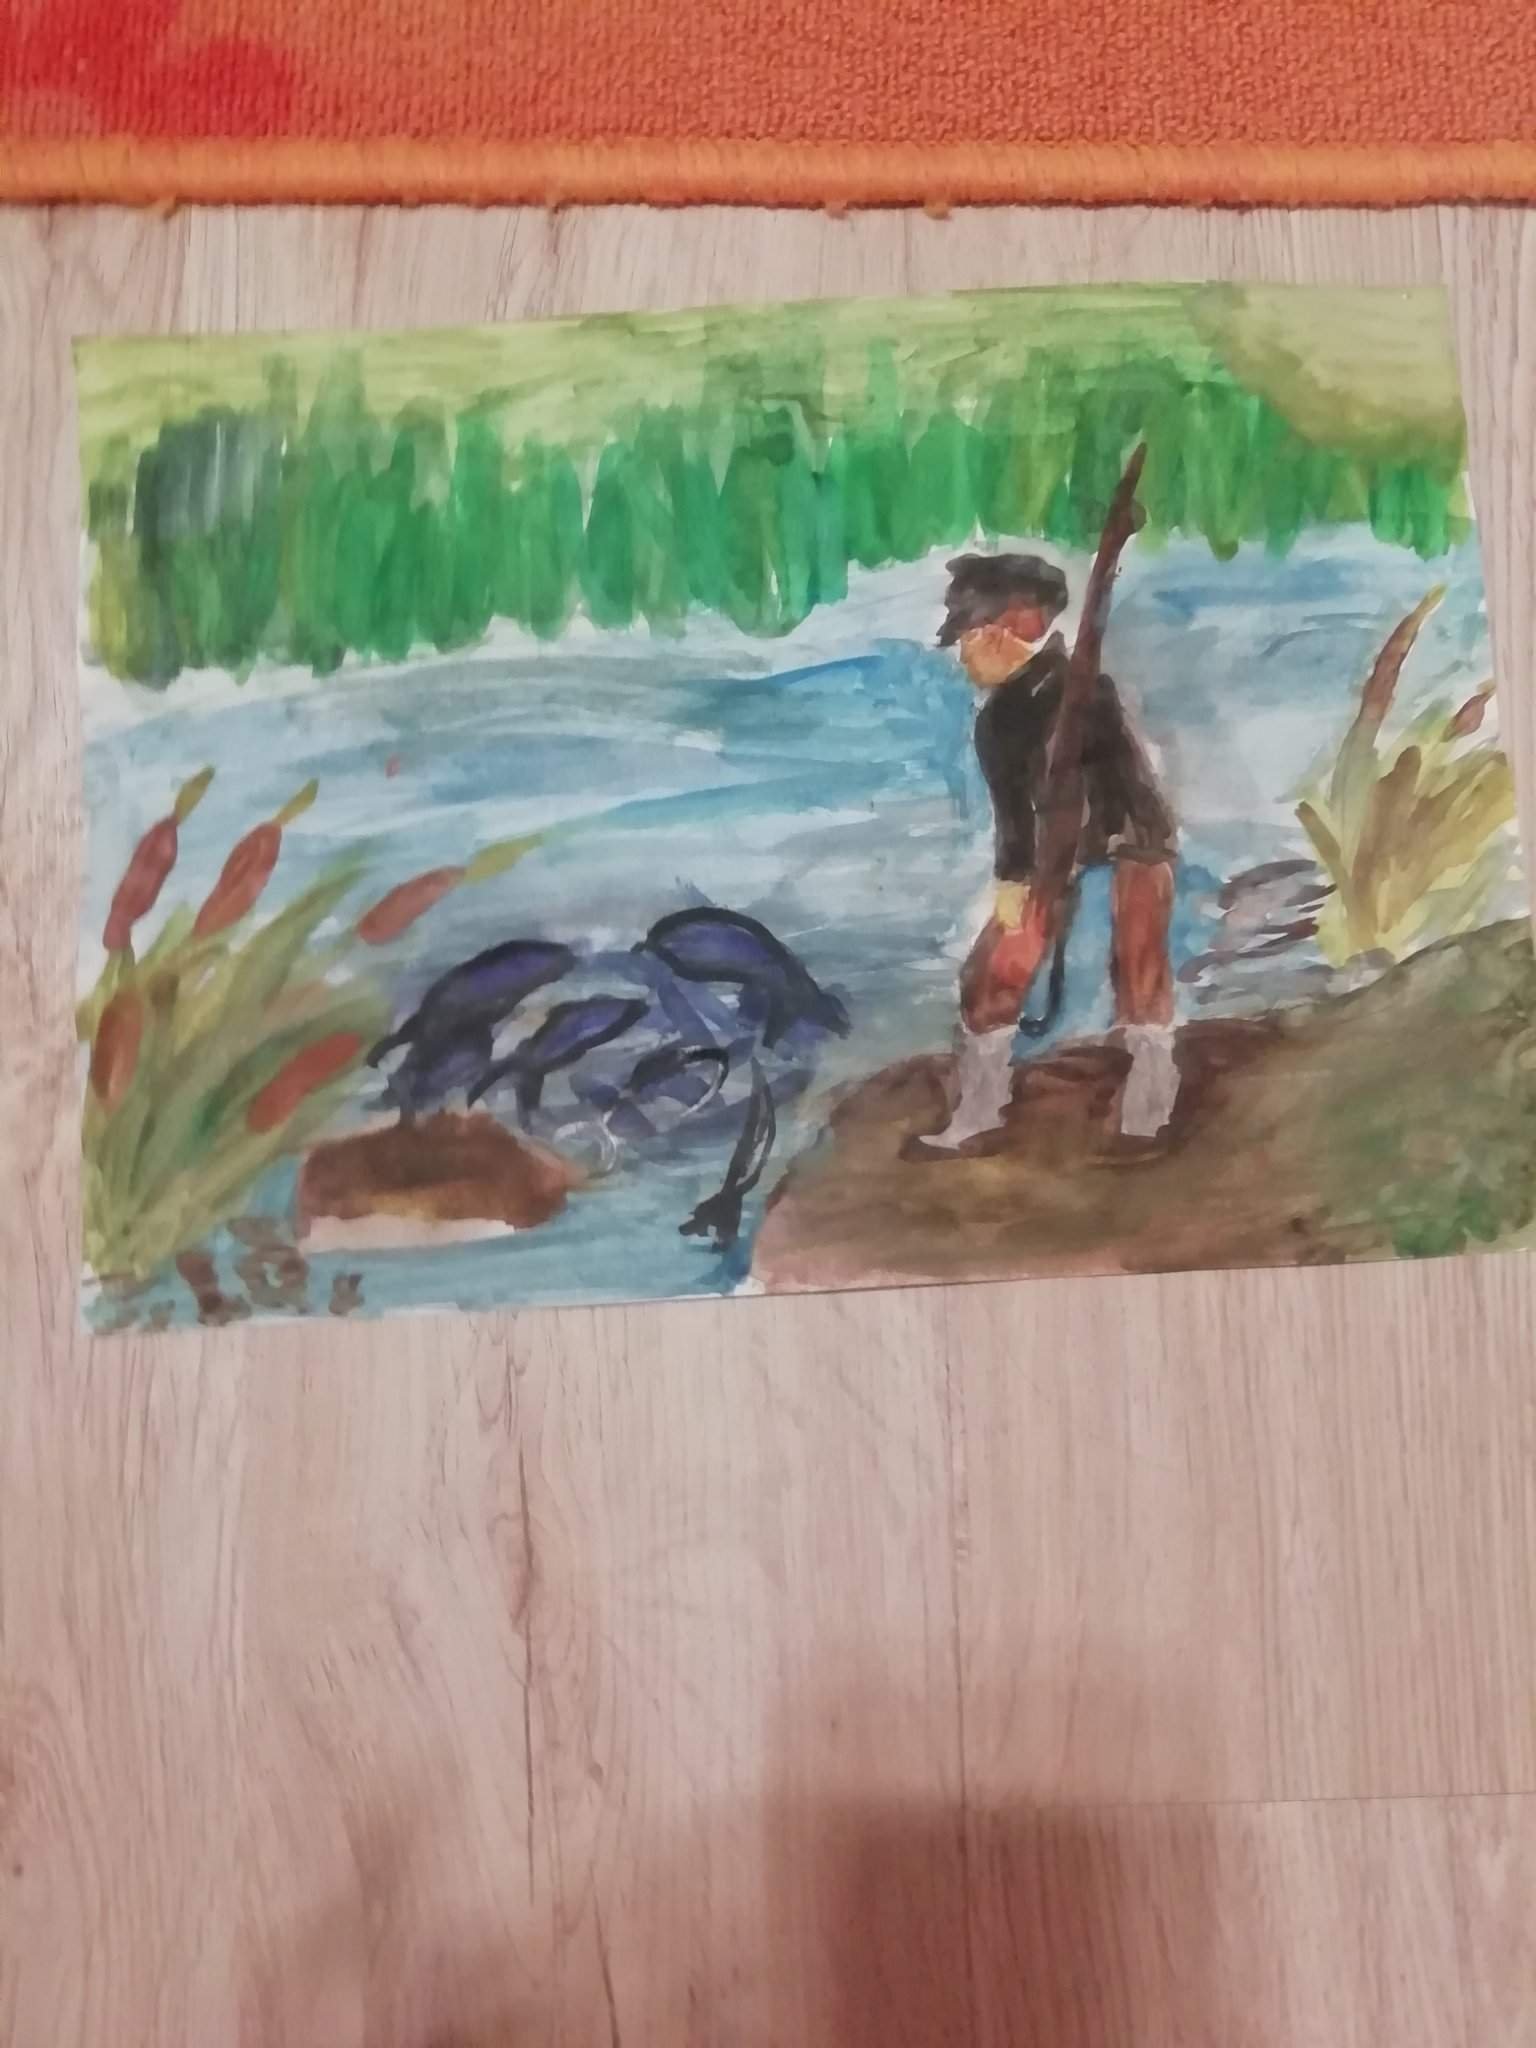 Пароход васюткино озеро. Иллюстрация к произведению Васюткино озеро. Нарисовать иллюстрацию к рассказу Васюткино озеро. Иллюстрация к рассказу Васюткино озеро. Иллюстрация к рассказу "Васюткина озеро.